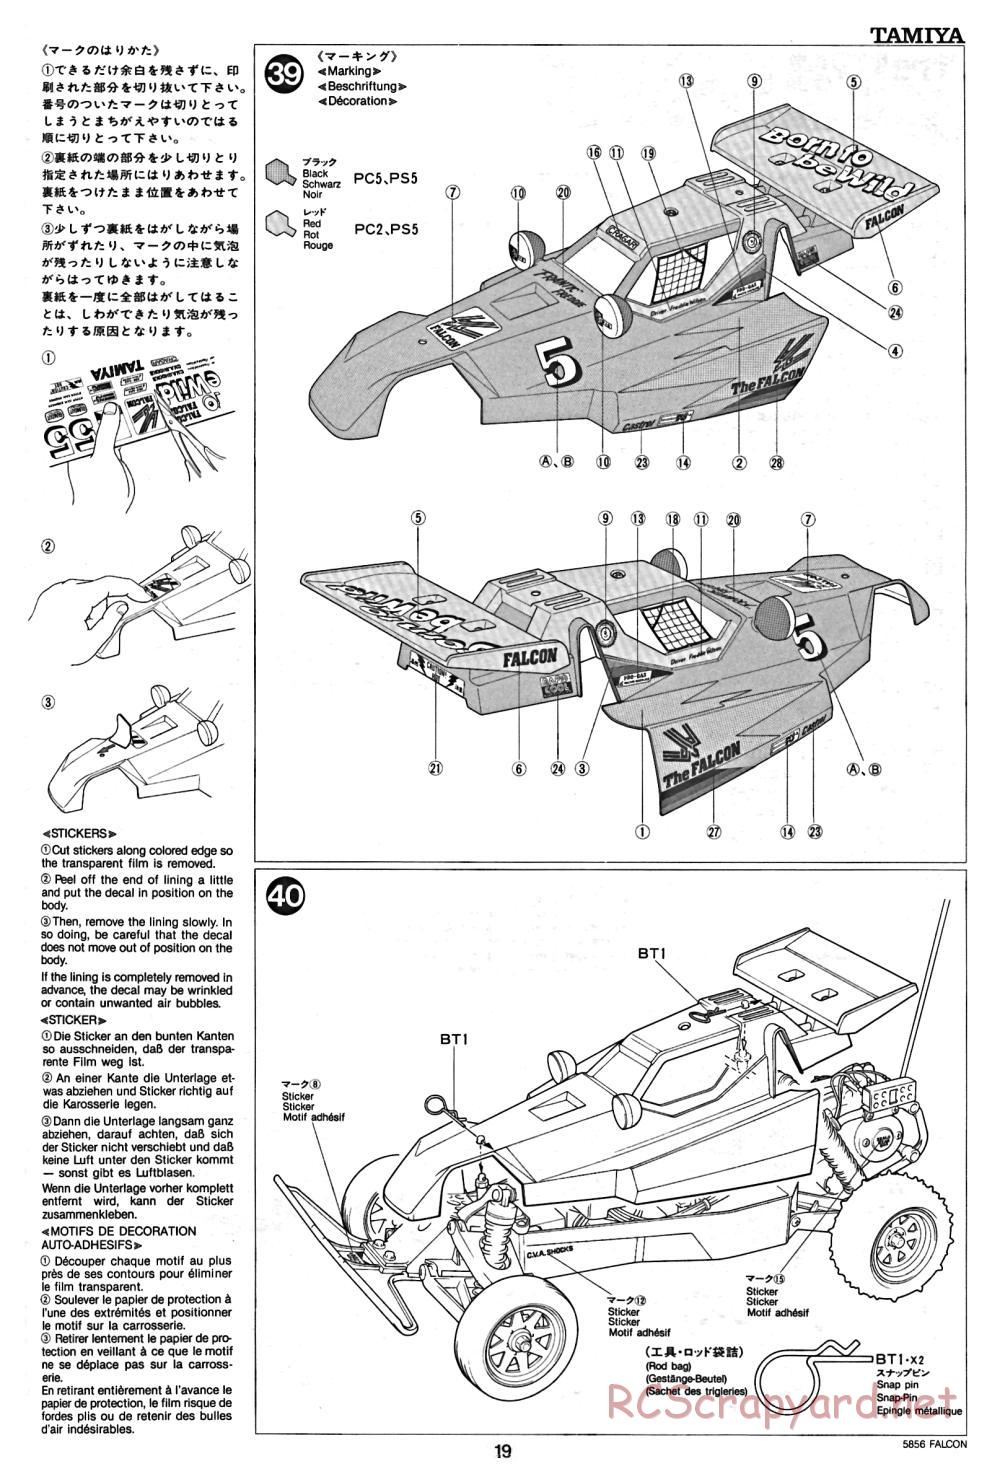 Tamiya - The Falcon - 58056 - Manual - Page 19